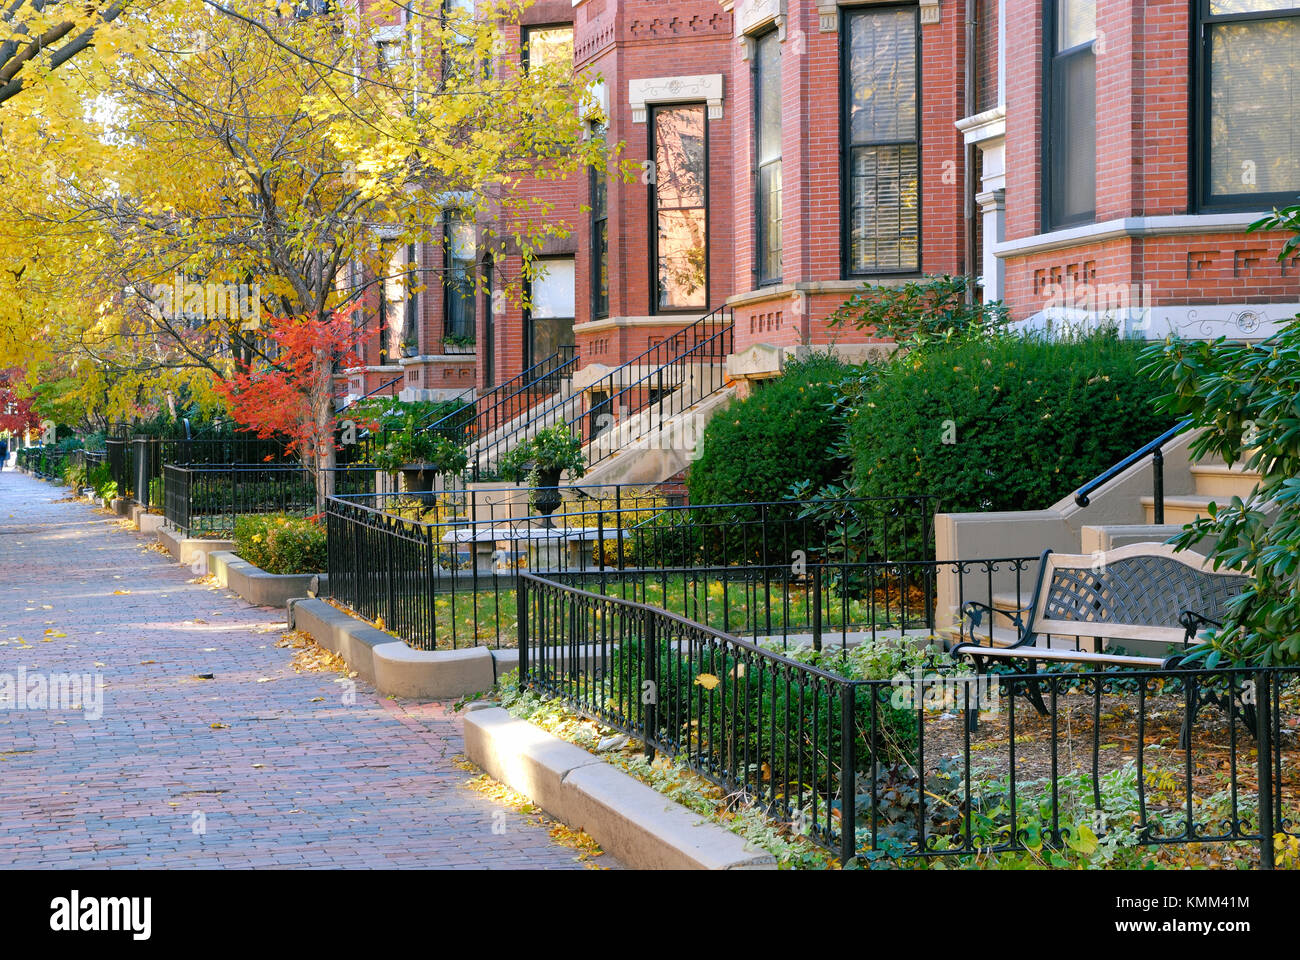 Brique rouge et feuillage d'automne dans la magnifique ville de Back Bay, Boston. L'architecture victorienne, paysage d'automne. Banque D'Images